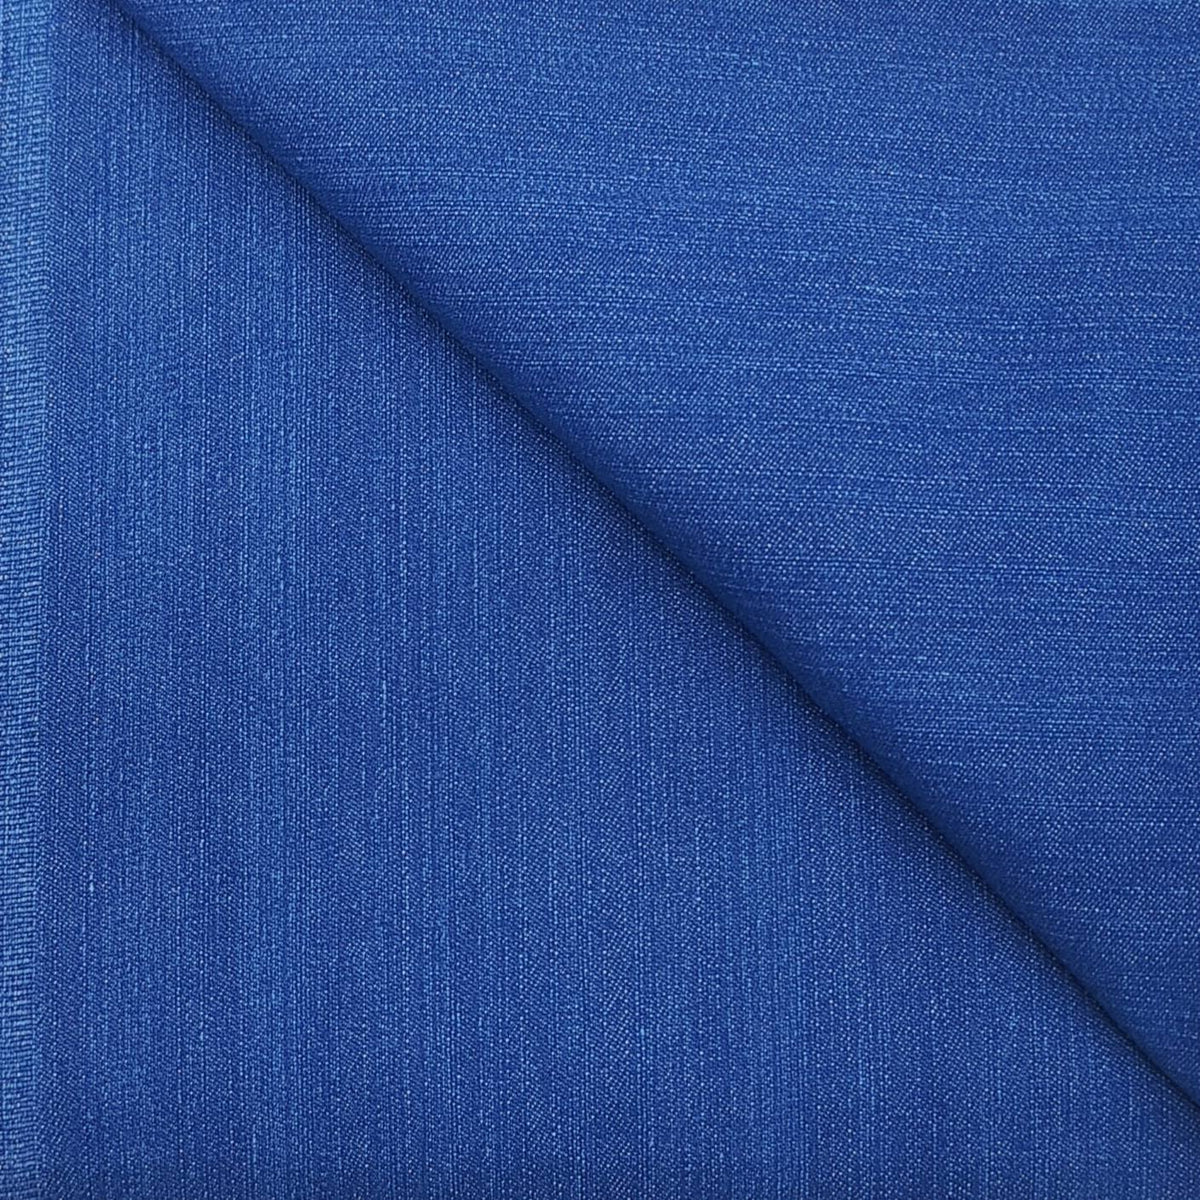 Arvind cotton denim stretchable jeans fabric colour Firoza blue